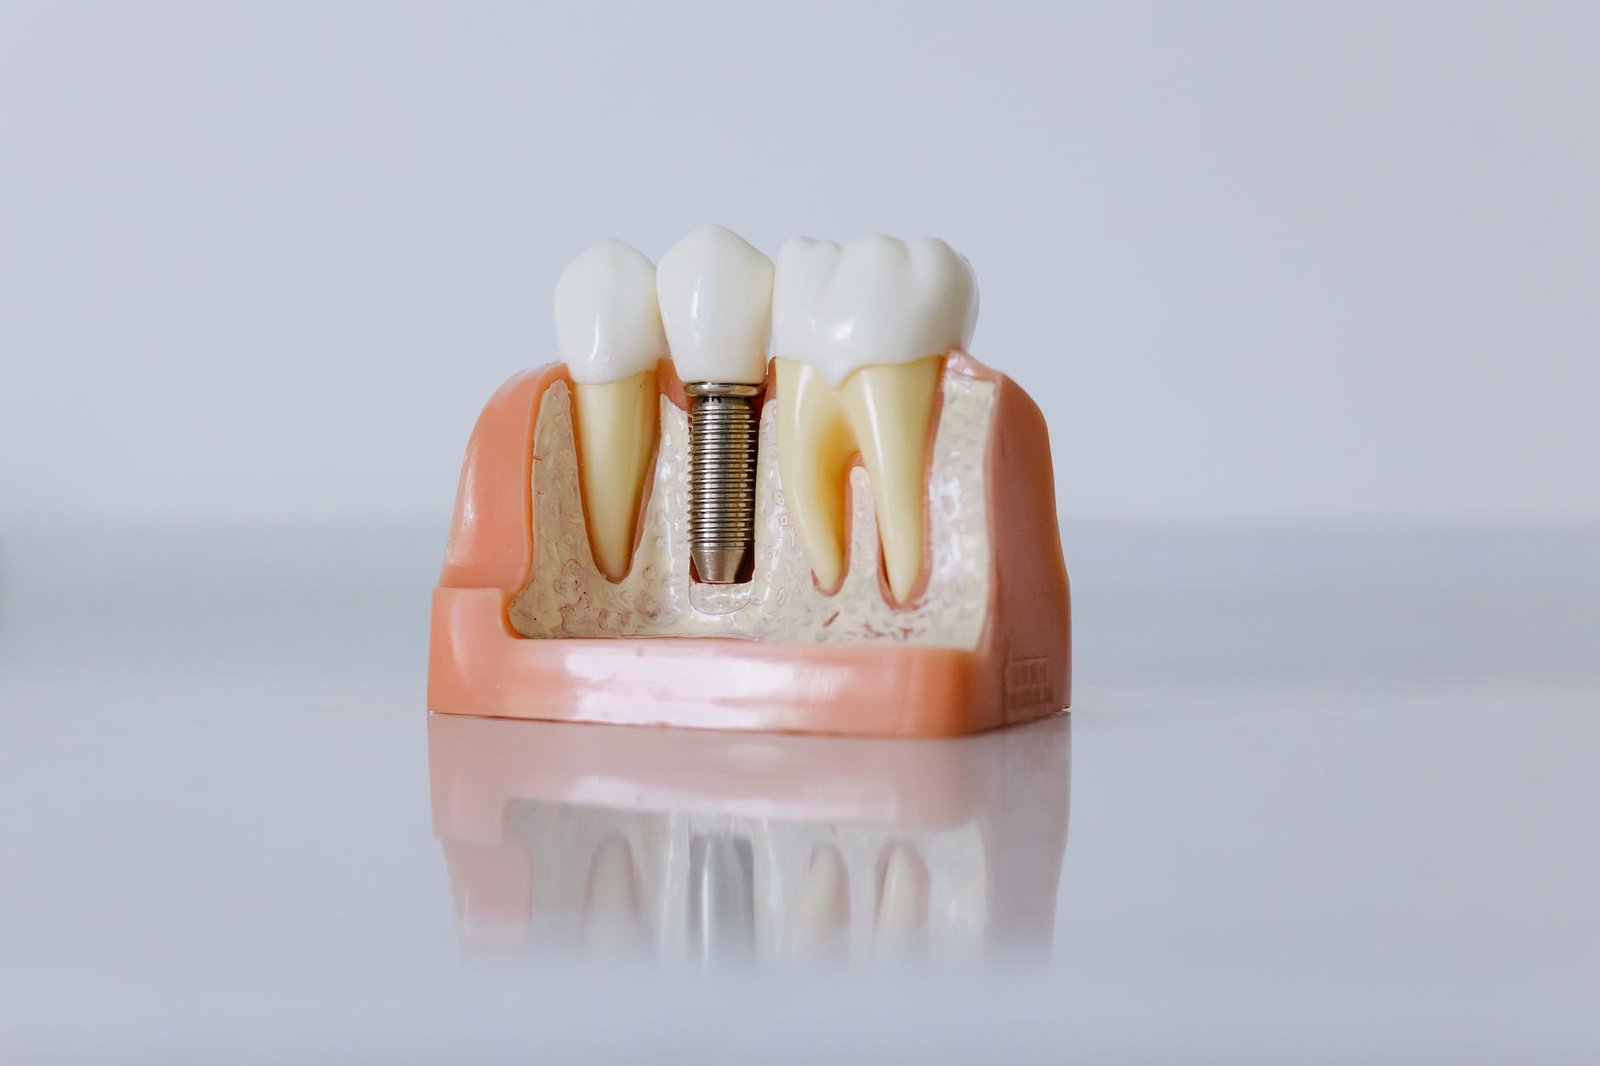 close up shot of dental implant model